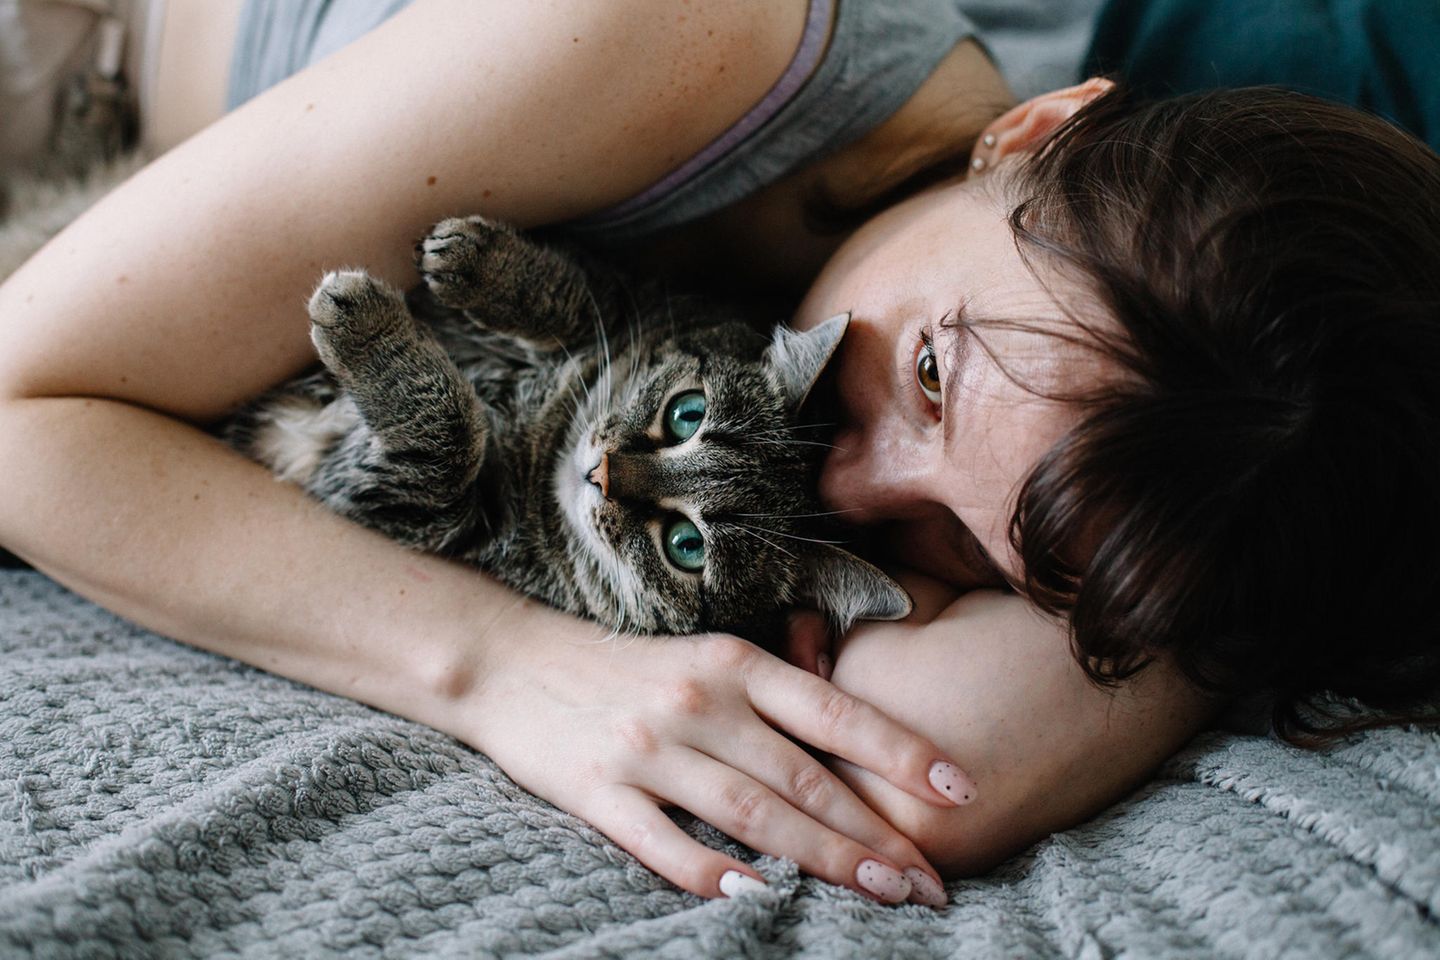 Verletzte Gefühle: Frau liegt mit Katze im Bett